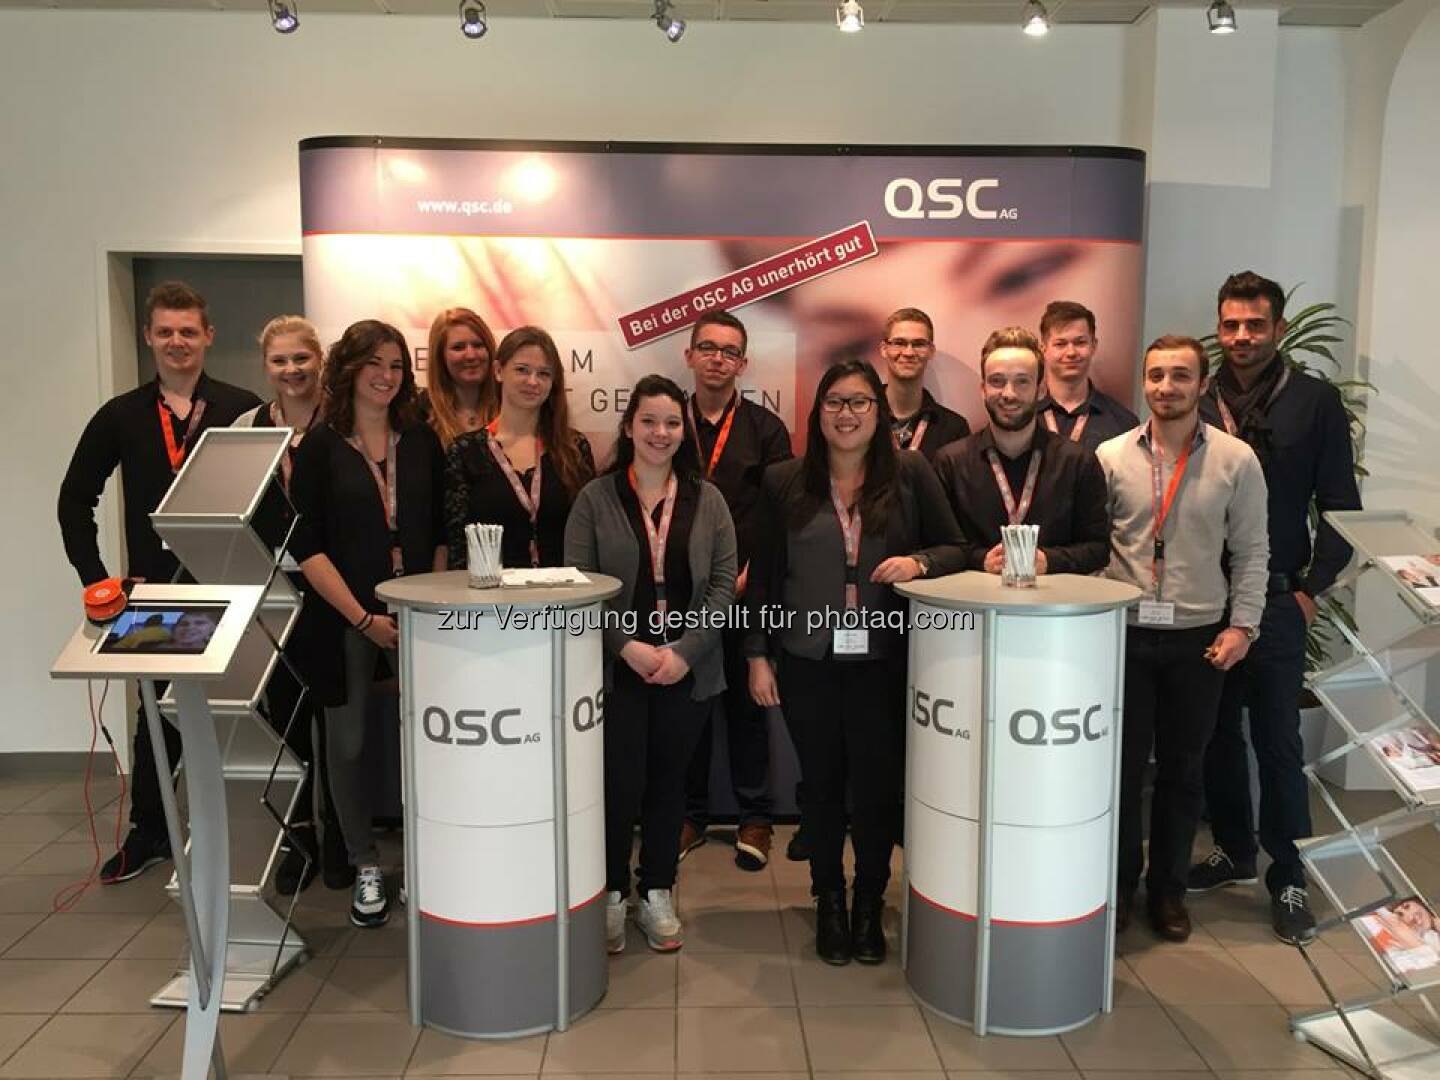 Willkommen zum Speed Day 2014! Von 10 bis 16 Uhr können sich Berufsanfänger über Ausbildungsplätze bei QSC und vielen anderen Unternehmen aus der Umgebung im Kölner Gewerbegebiet Ossendorf informieren.  Wir freuen uns auf euch!  Source: http://facebook.com/QSCAG